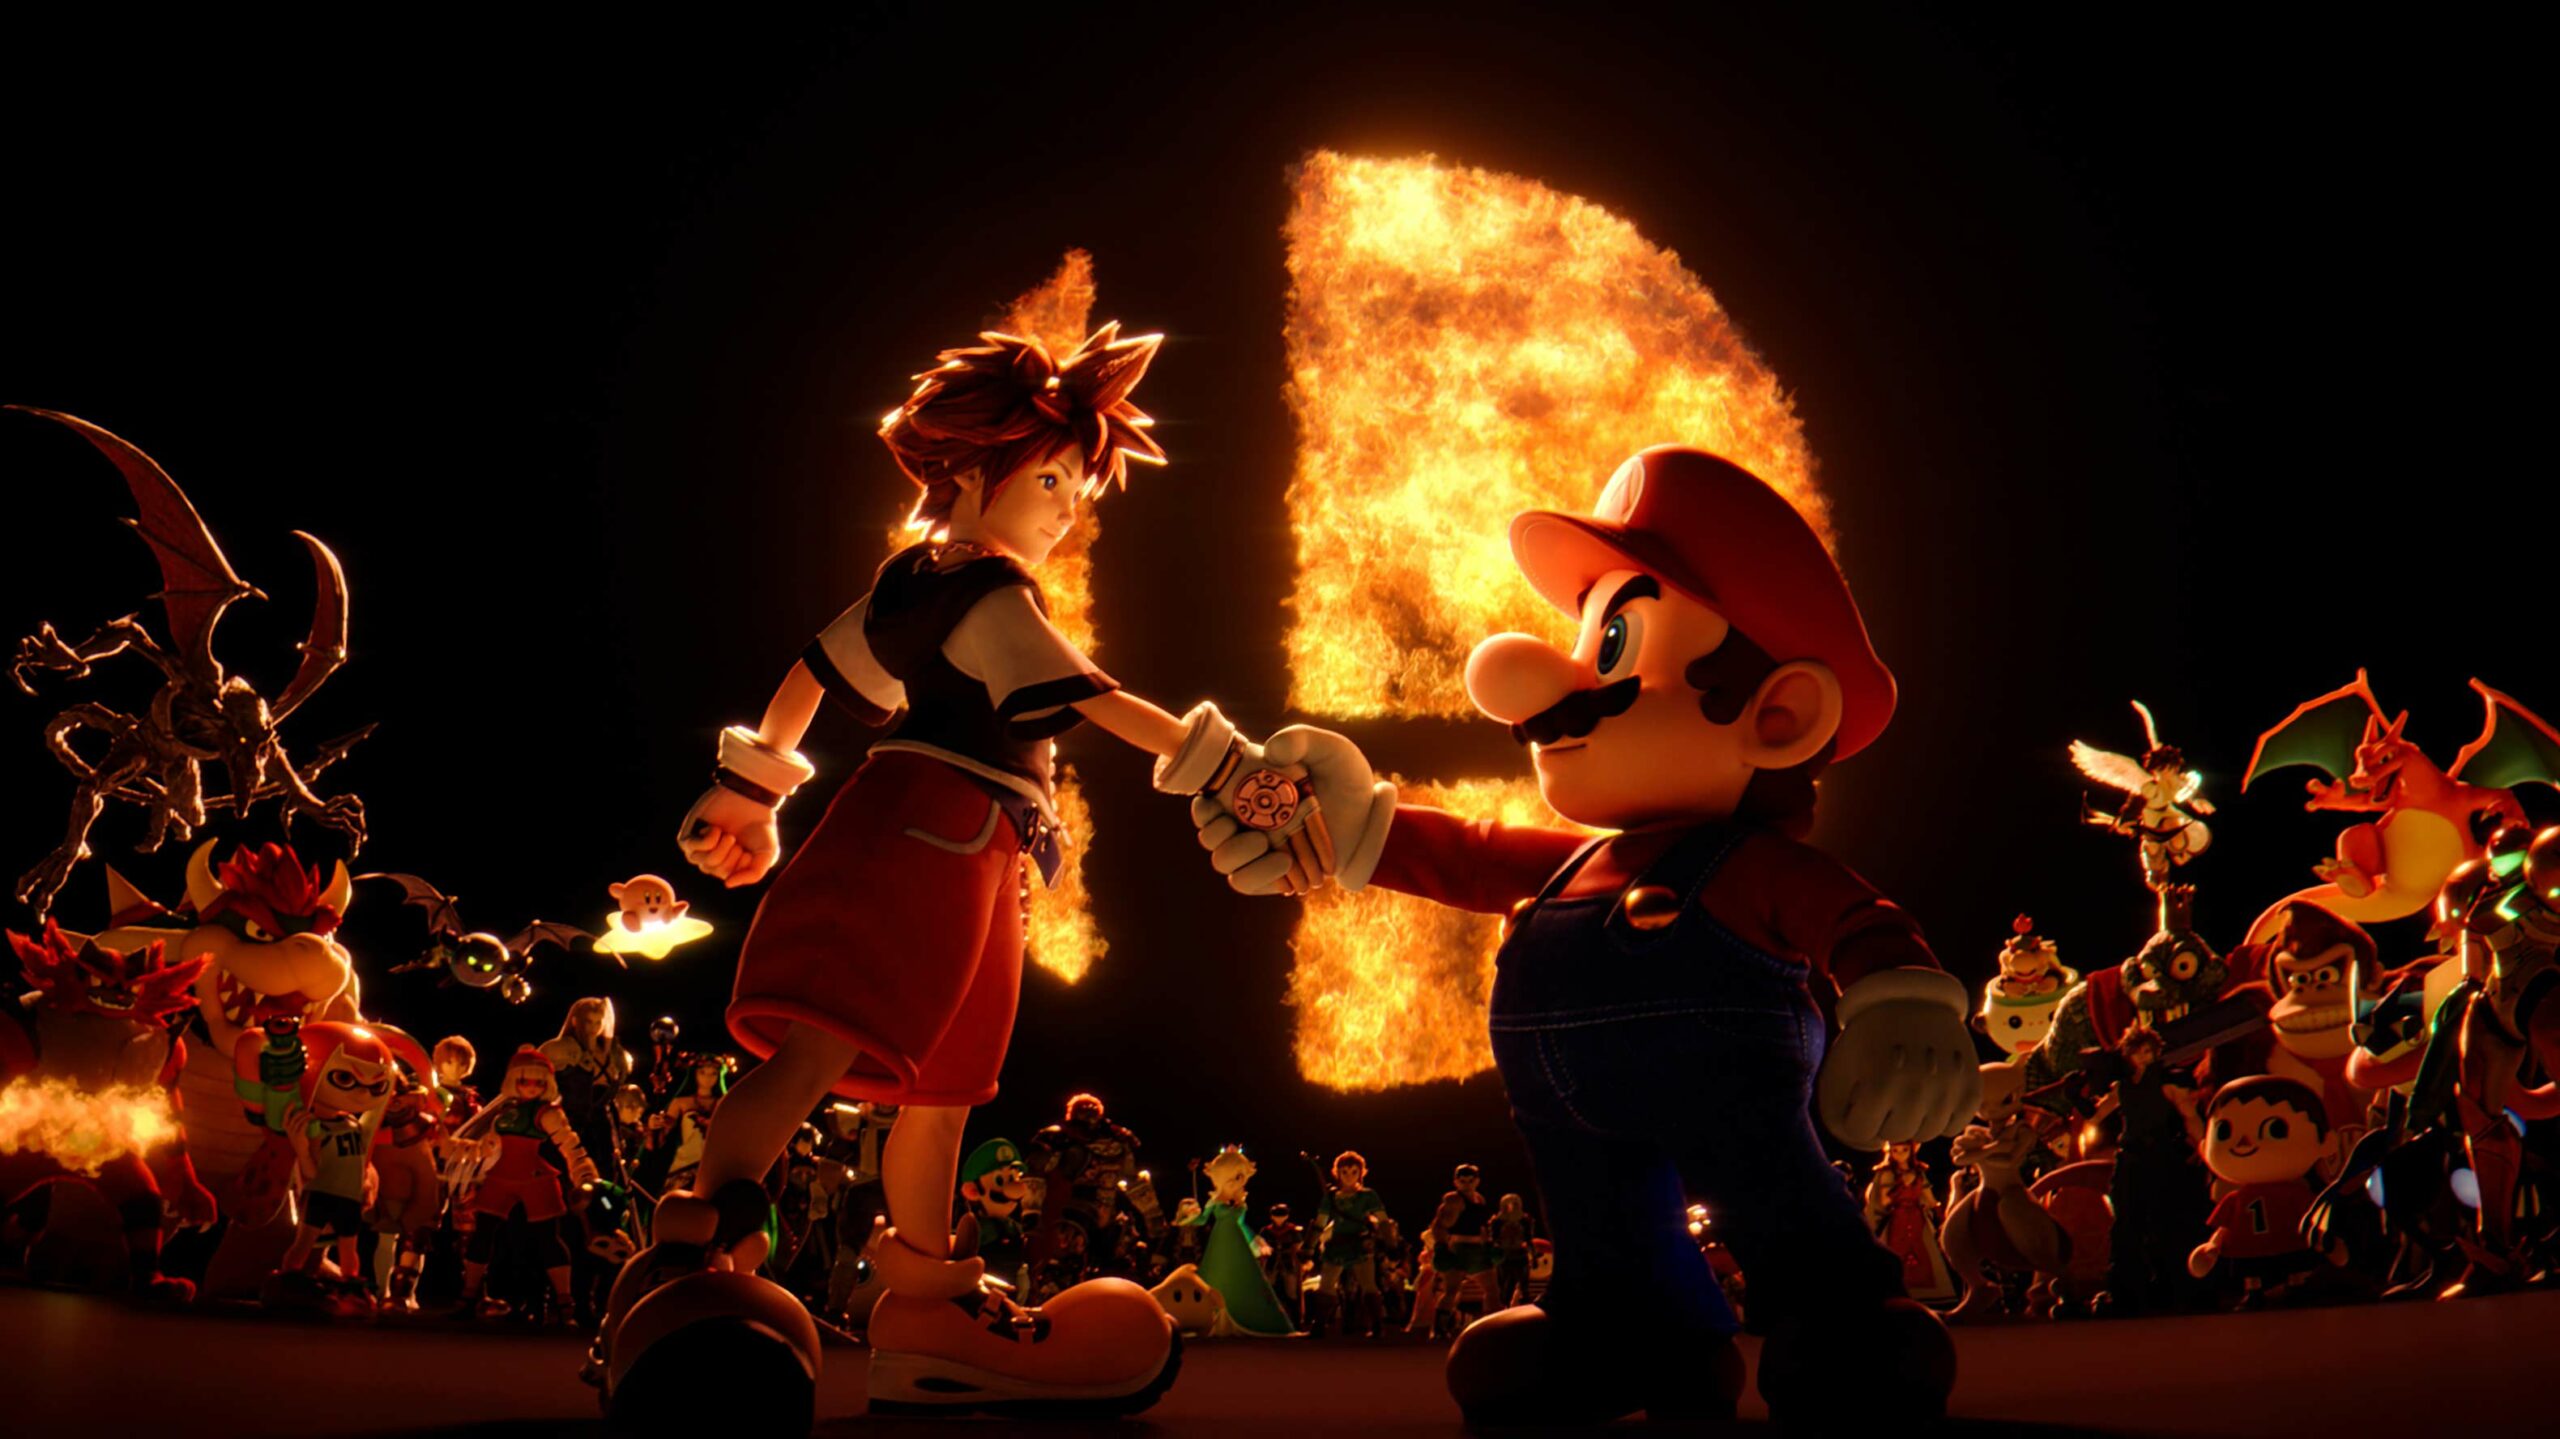 Super Smash Bros. Ultimate Sora and Mario